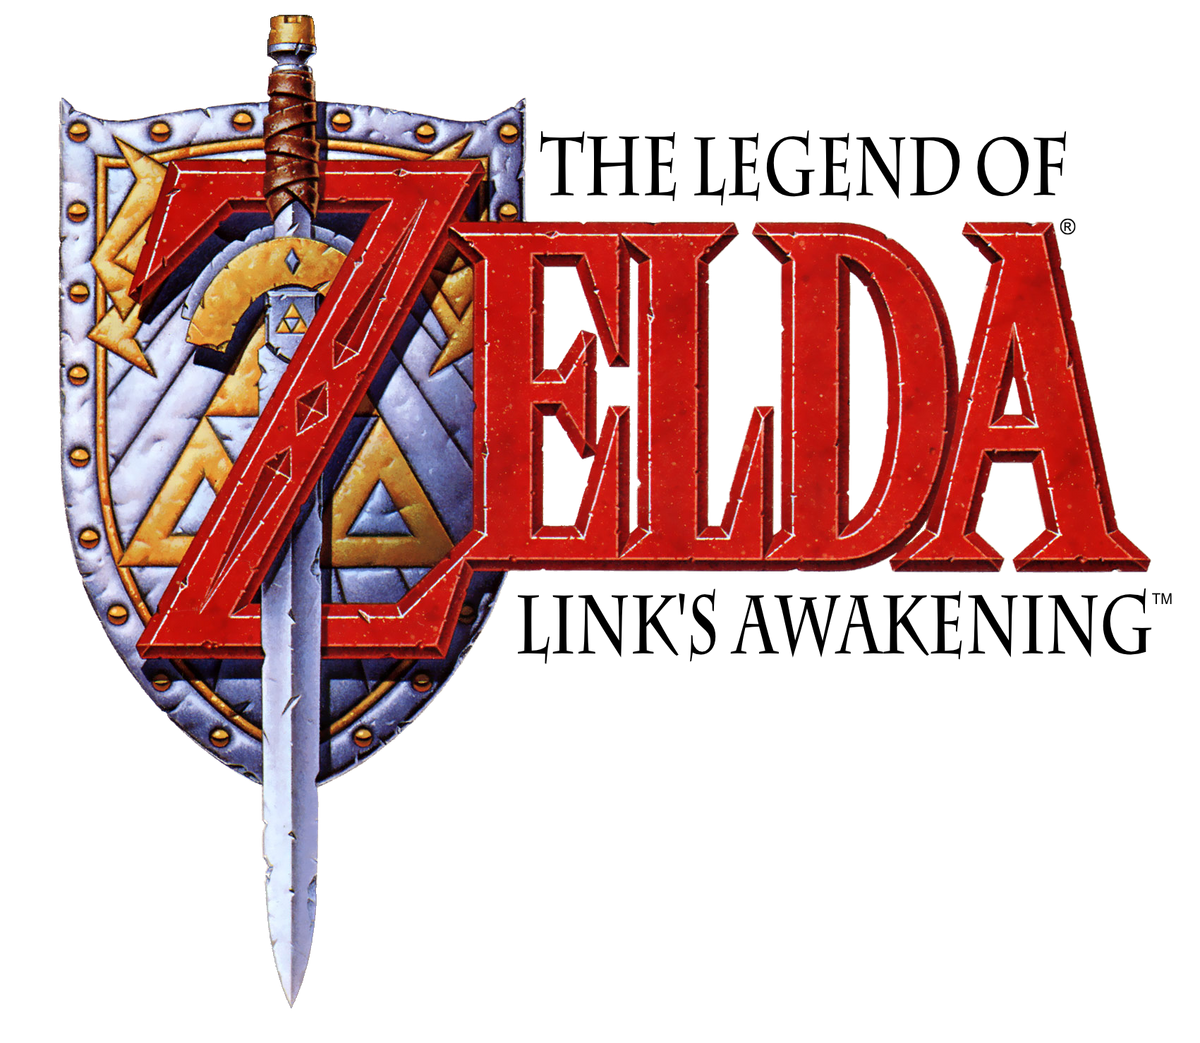 Marin - Zelda Dungeon Wiki, a The Legend of Zelda wiki